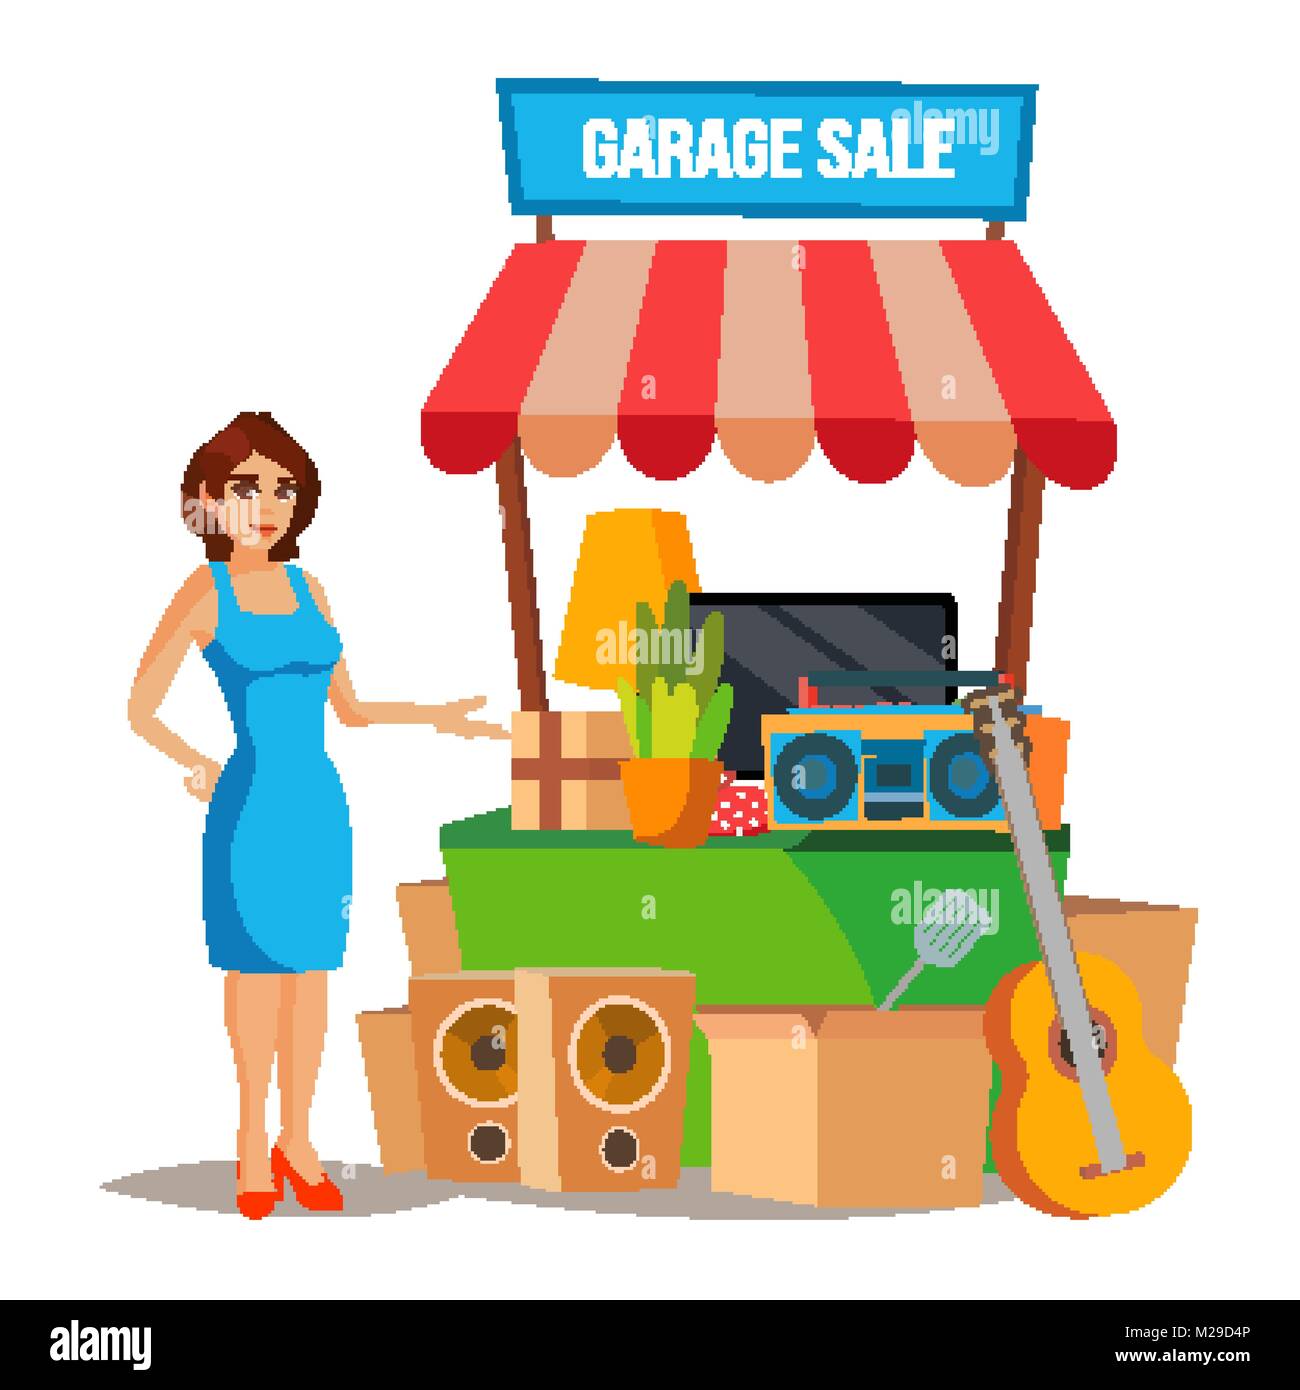 https://c8.alamy.com/comp/M29D4P/yard-sale-vector-household-items-sale-woman-manning-a-garage-sale-M29D4P.jpg